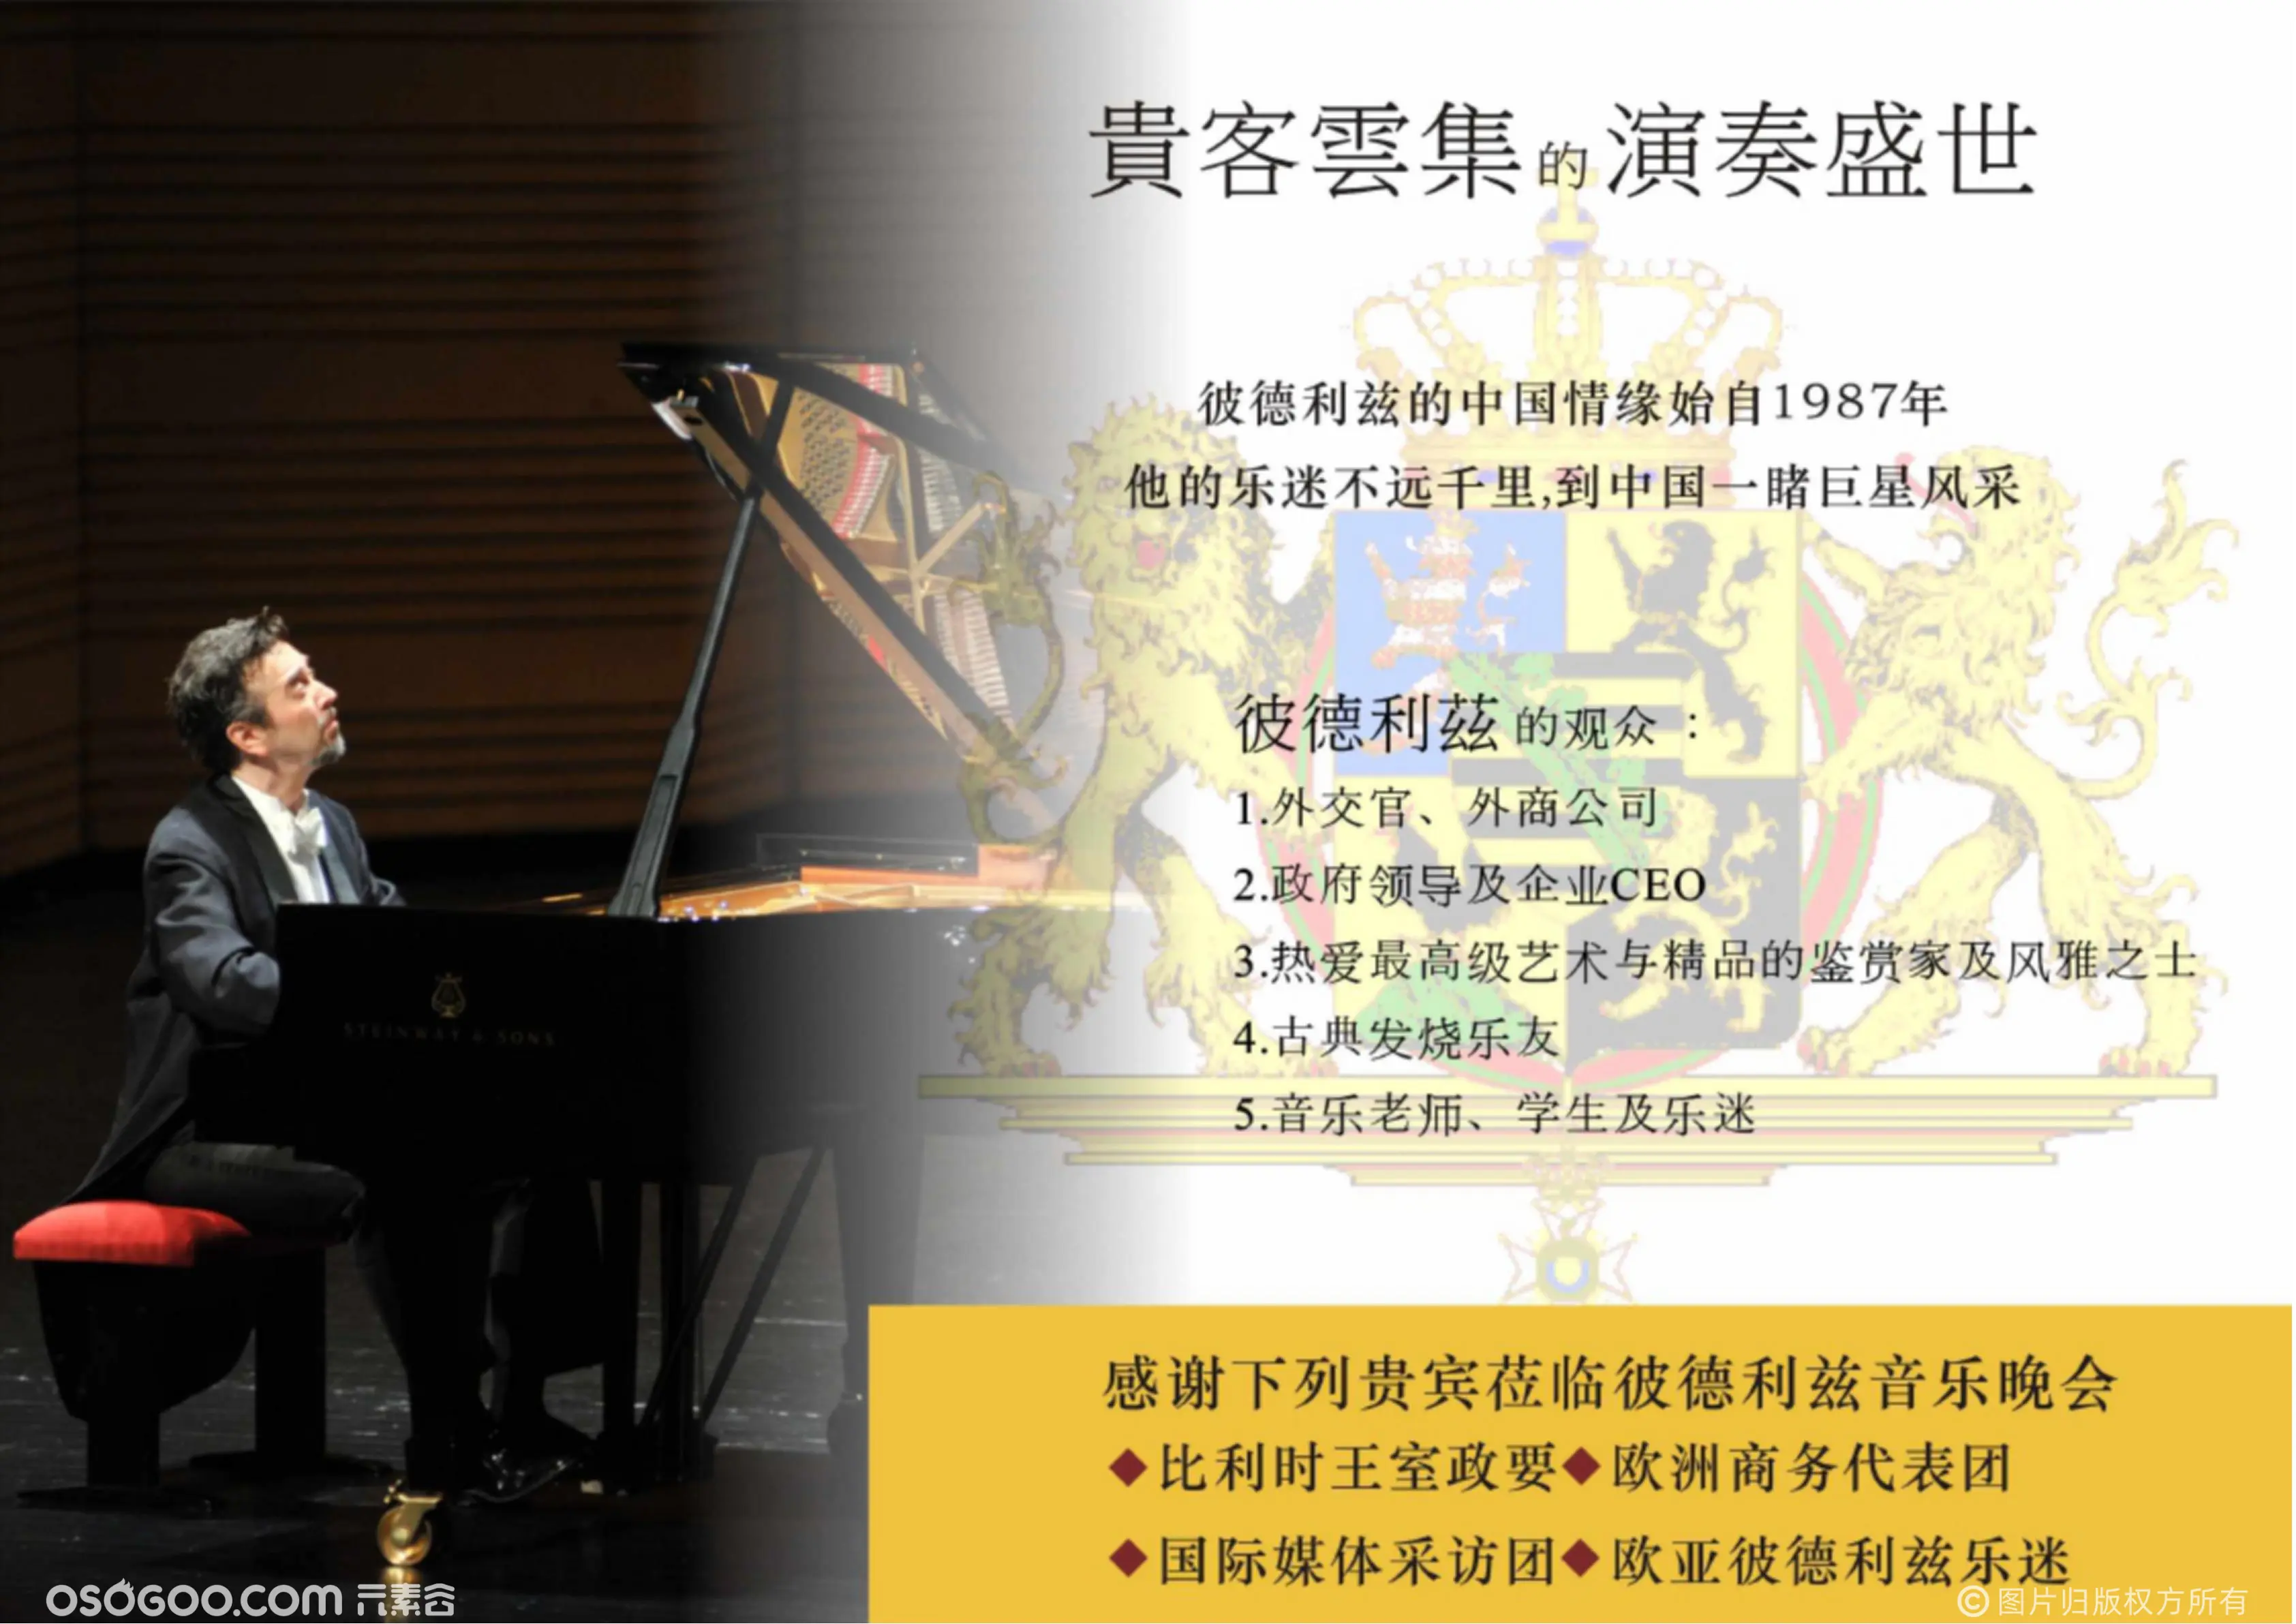 贝多芬第五代弟子彼德利兹中国音乐会巡回